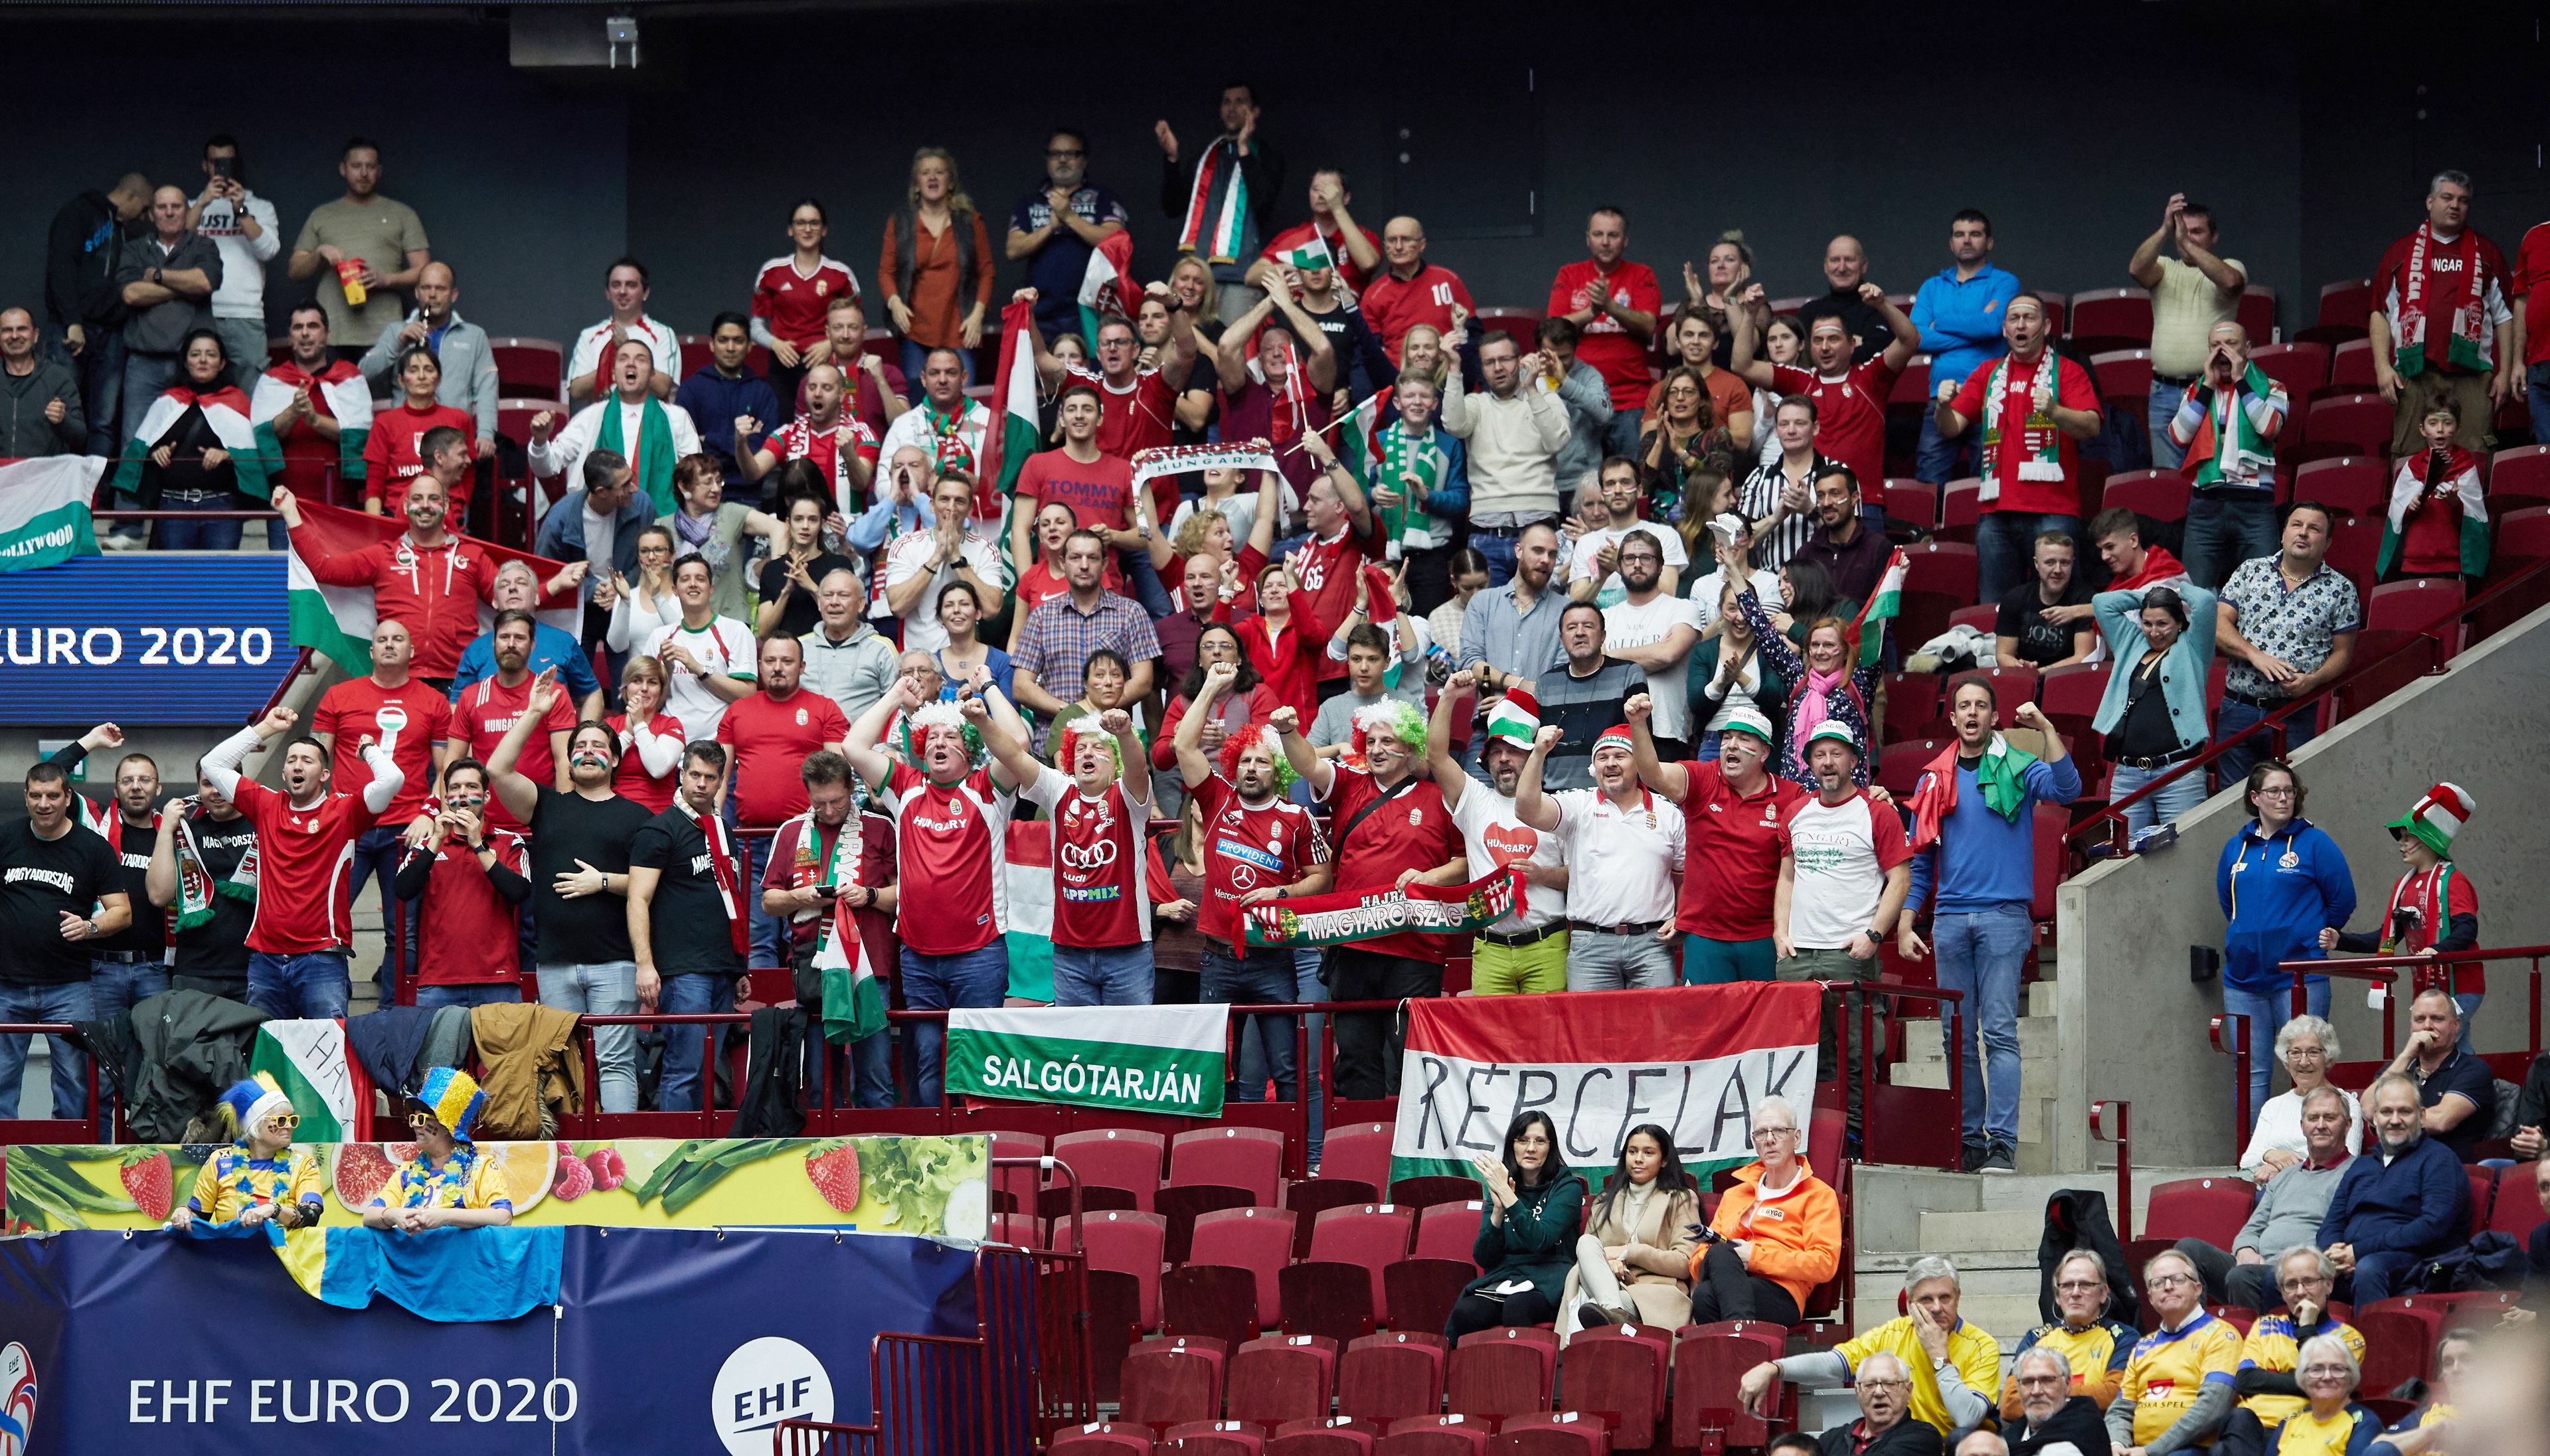 Magyar szurkolók az olimpiai kvalifikációs férfi kézilabda Európa-bajnokság középdöntőjének harmadik fordulójában játszott Magyarország-Svédország mérkőzésen Malmőben / Fotó: MTI/EPA/TT Hírügynökség/Andreas Hillergren